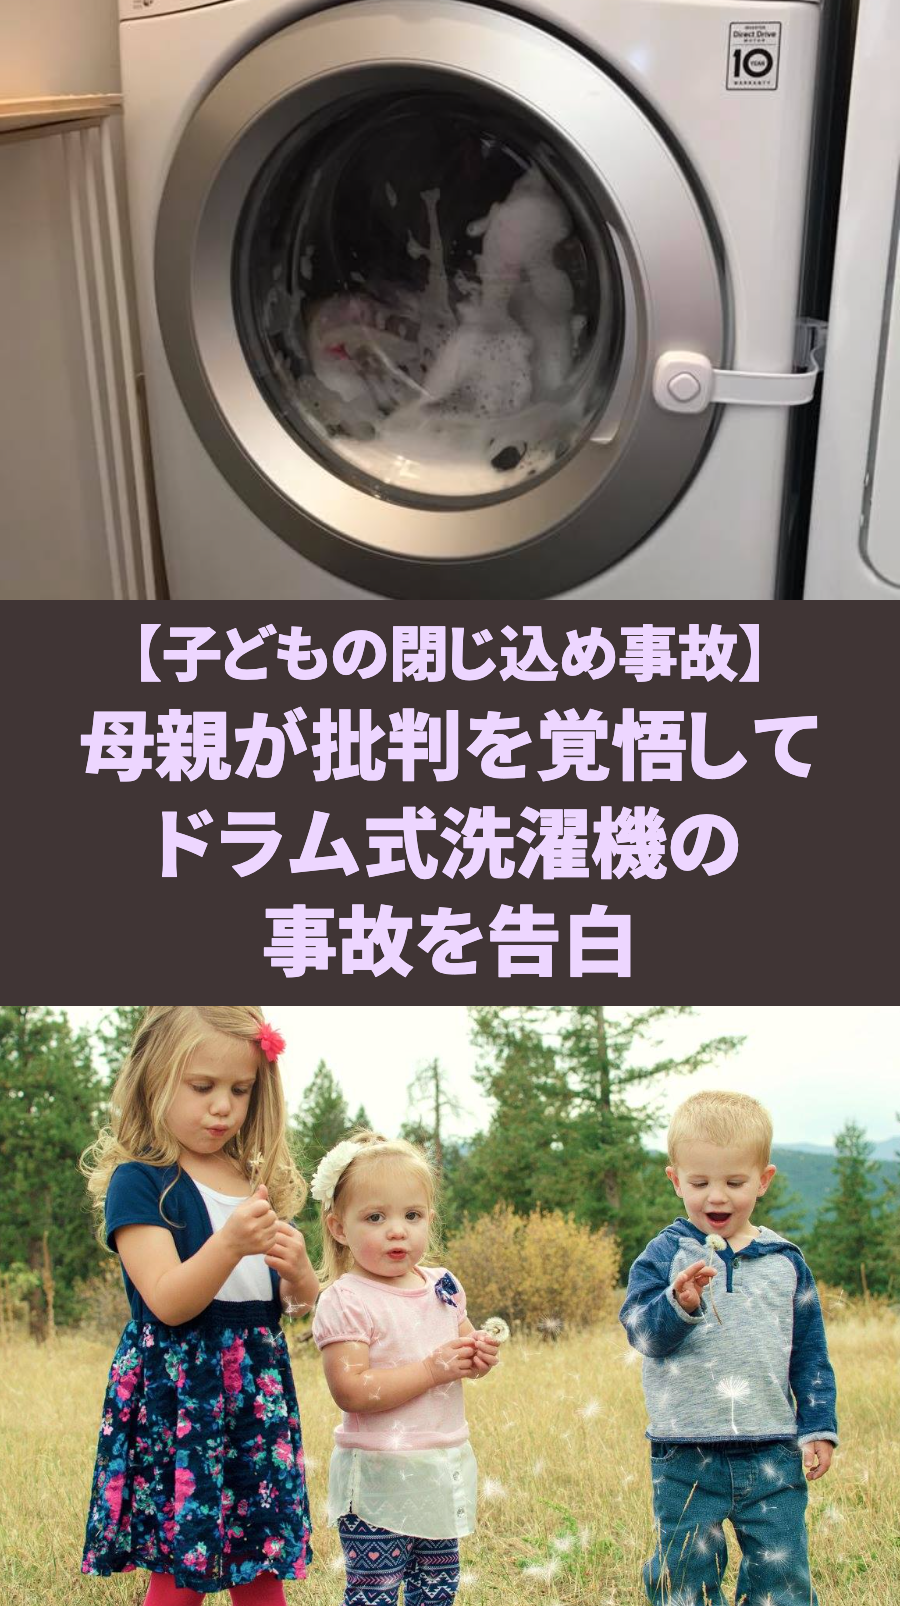 【子どもの閉じ込め事故】母親が批判を覚悟してドラム式洗濯機の事故を告白